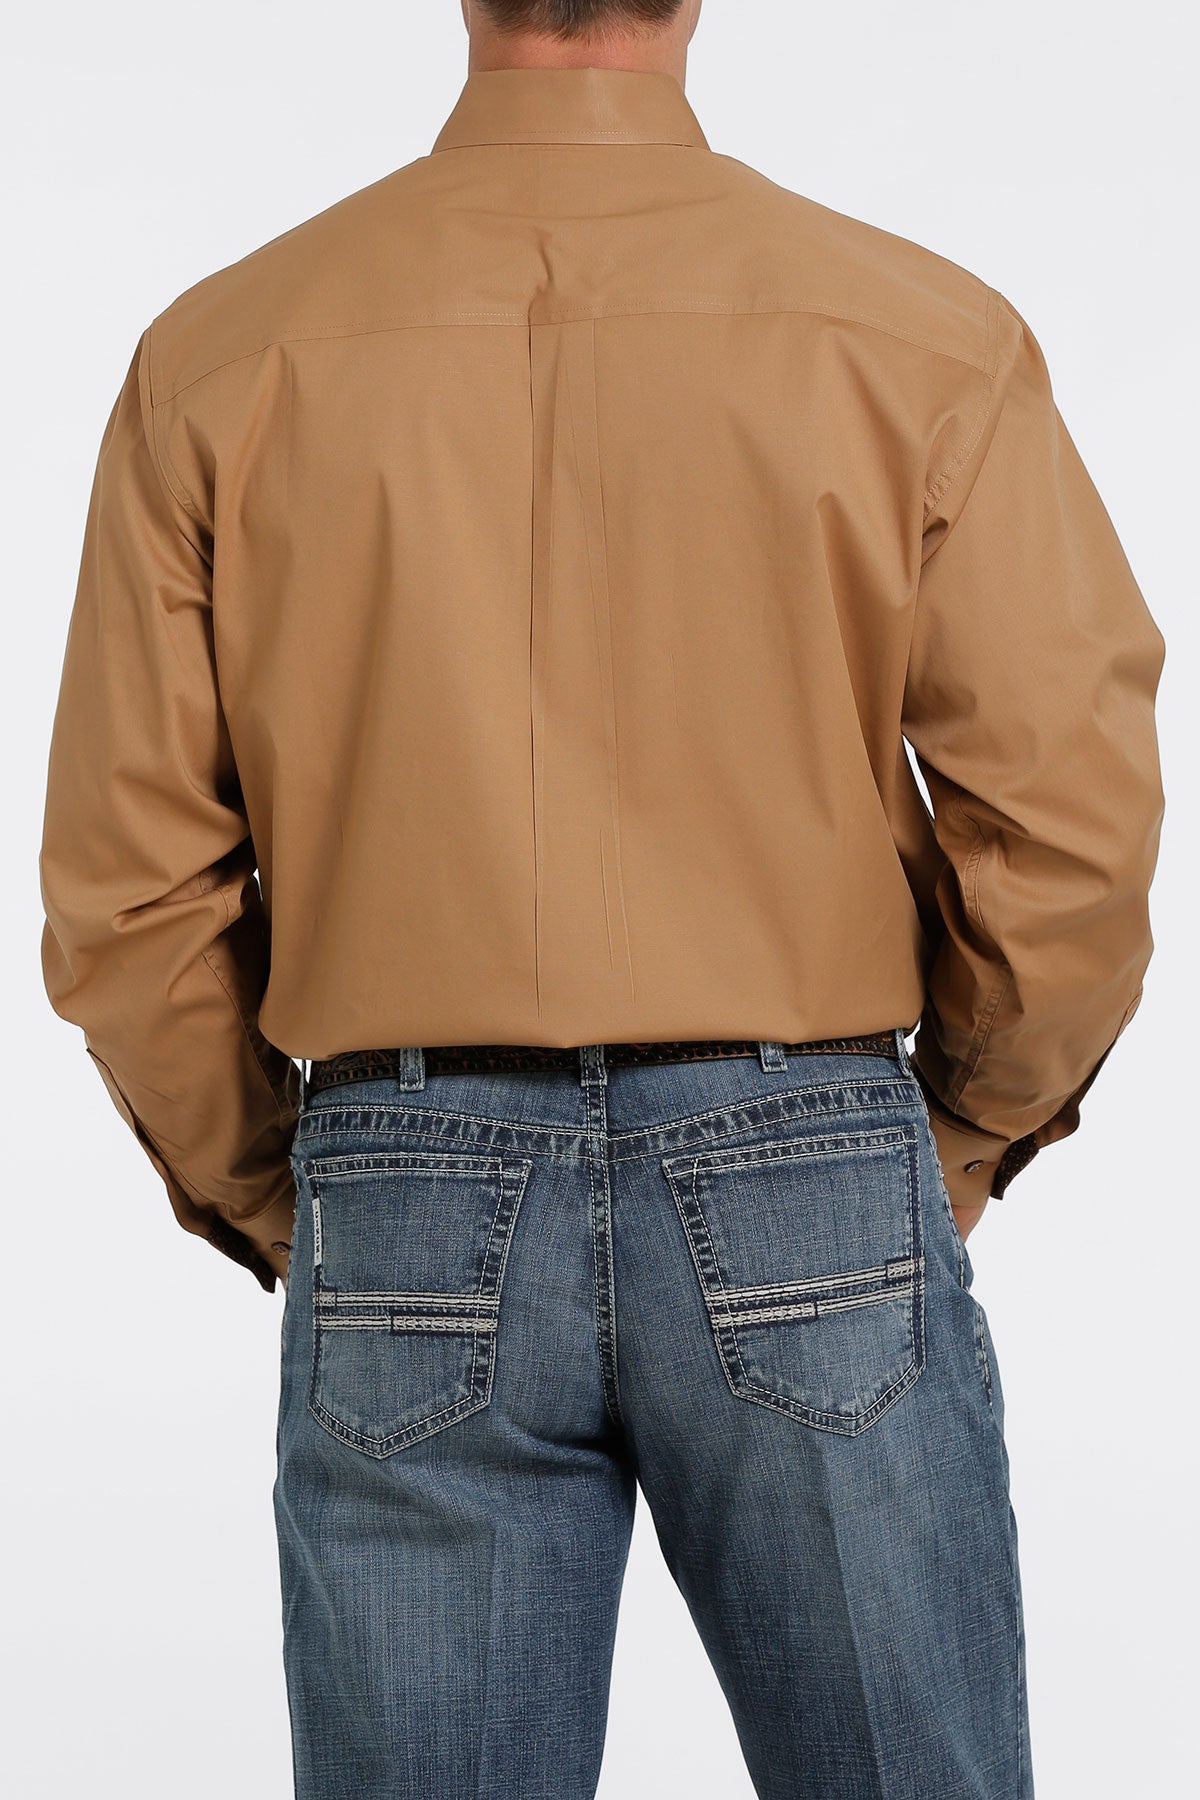 Cinch Men’s Solid Brown Shirt (5377)